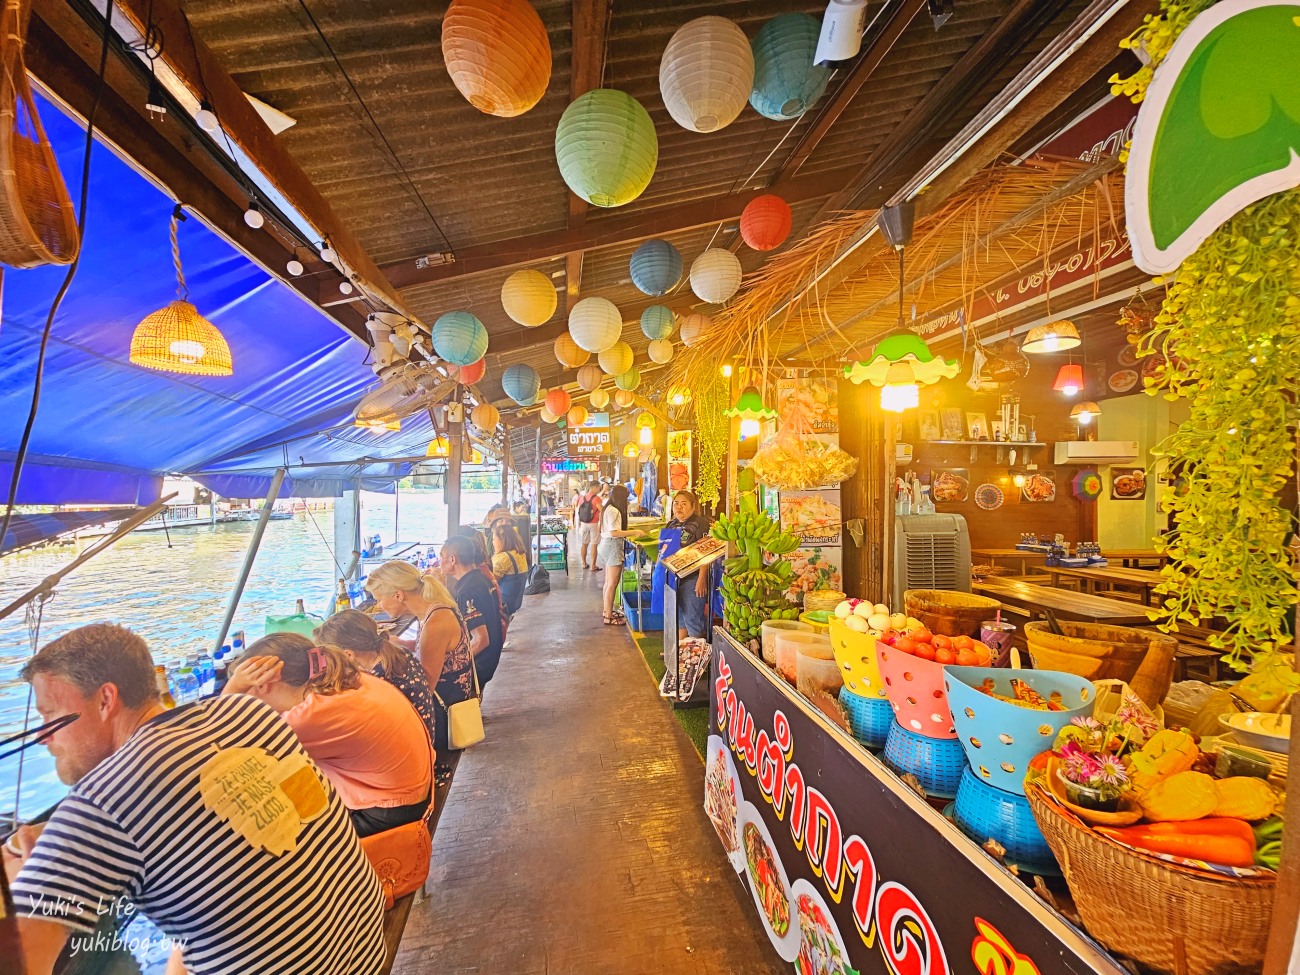 【曼谷自由行】曼谷必去6個水上市場、海鮮市場推薦懶人包(交通&營業資訊) - yuki.tw